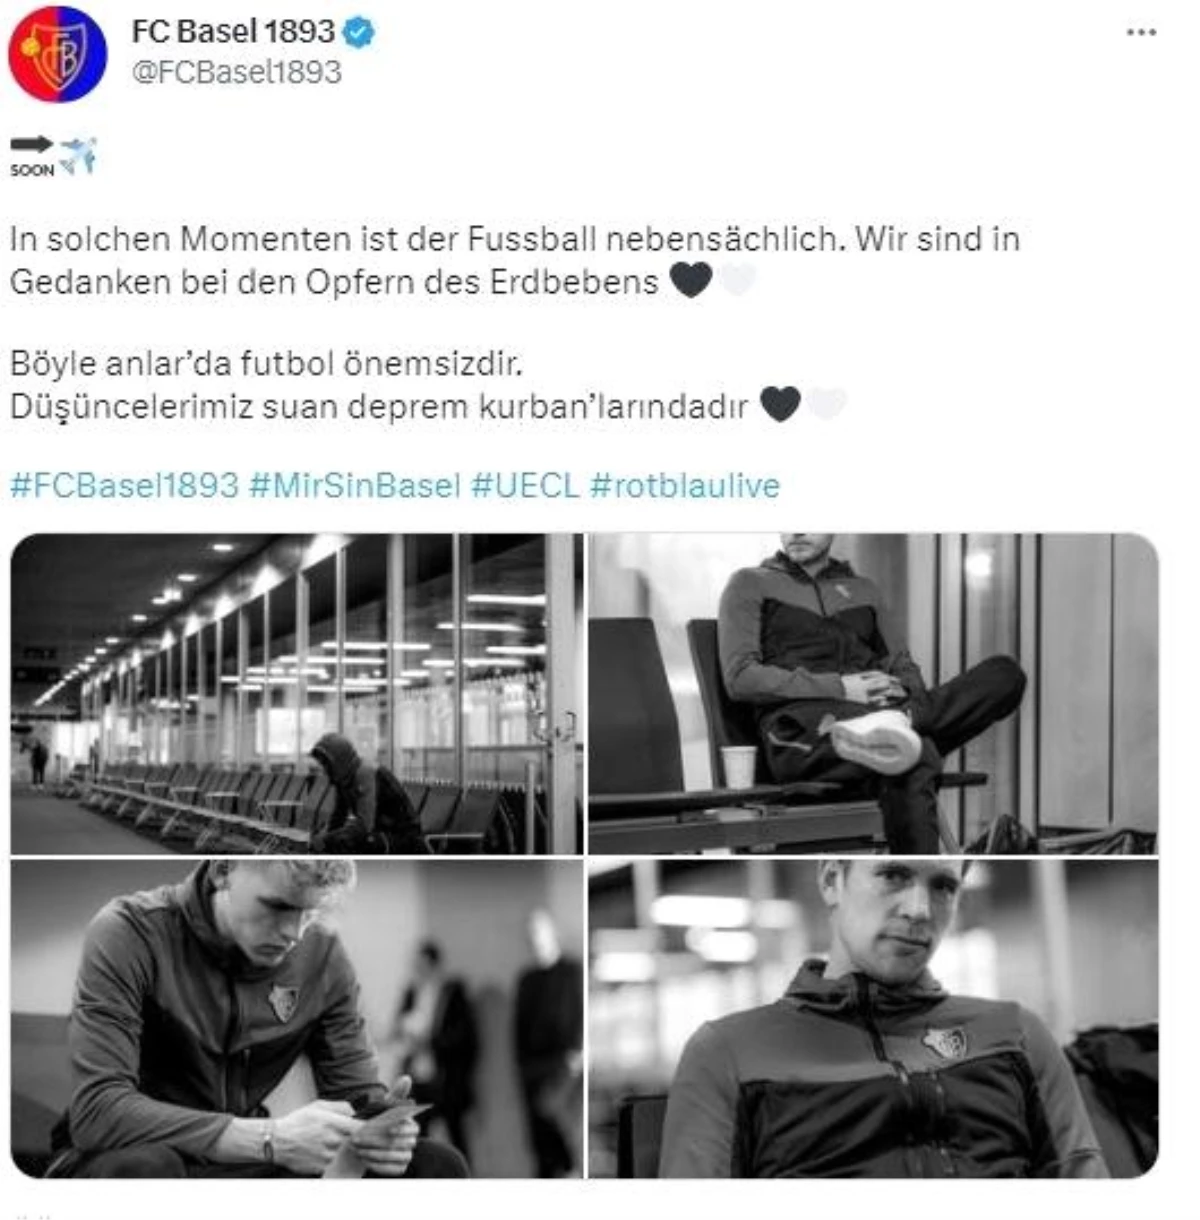 Basel: "Böyle anlarda futbol önemsizdir"